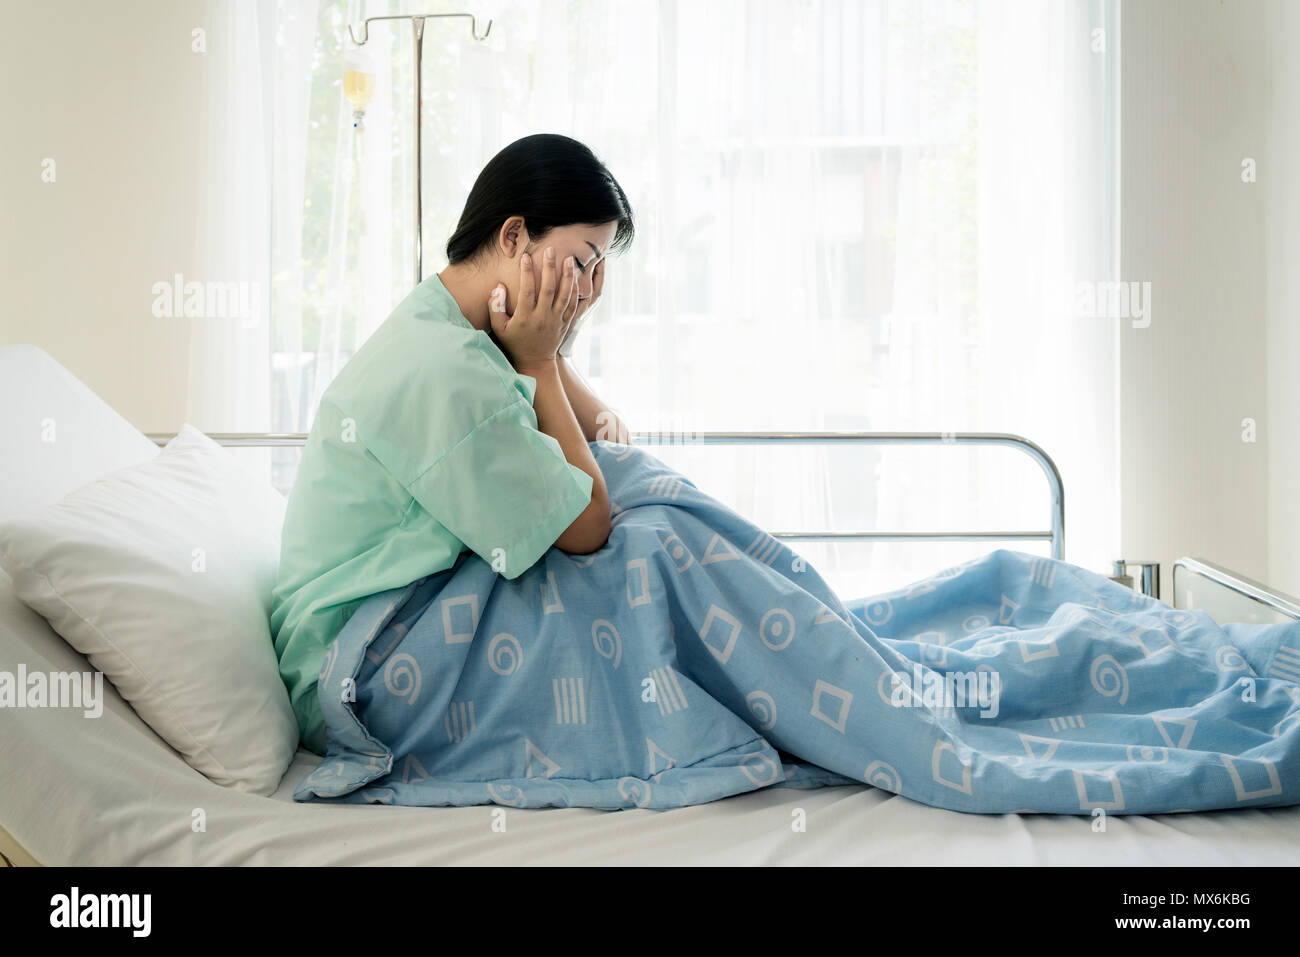 Asiatische junge Frau Patienten im Krankenhaus Bett lag, traurig und depressiv machen. Krankheit krank im Gesundheitswesen und klinische Aufmerksamkeit Konzept. Stockfoto